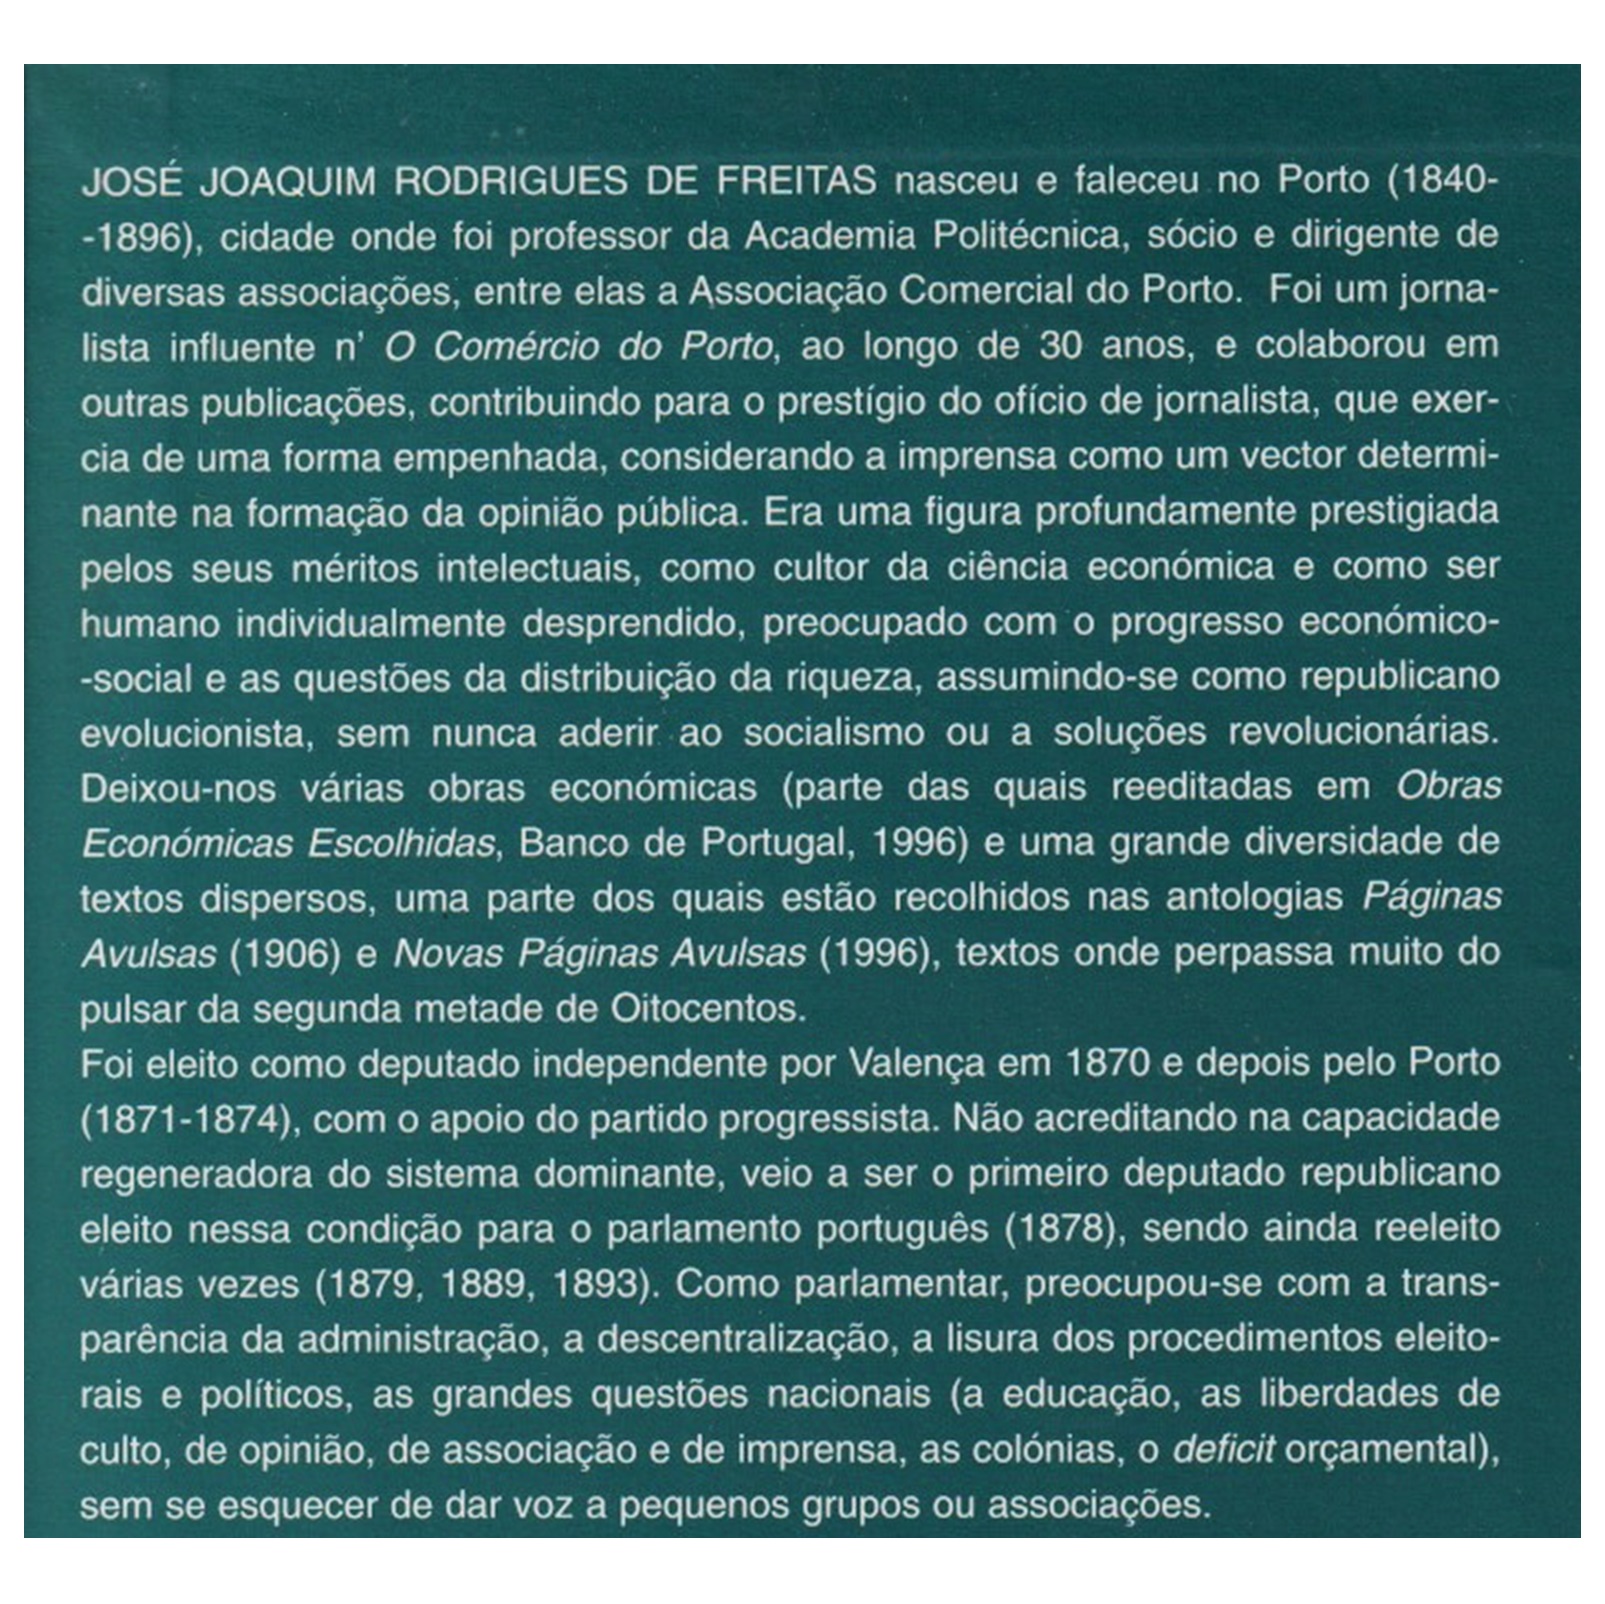 ﻿RODRIGUES DE FREITAS: INTERVENÇÕES PARLAMENTARES (1870-1893)